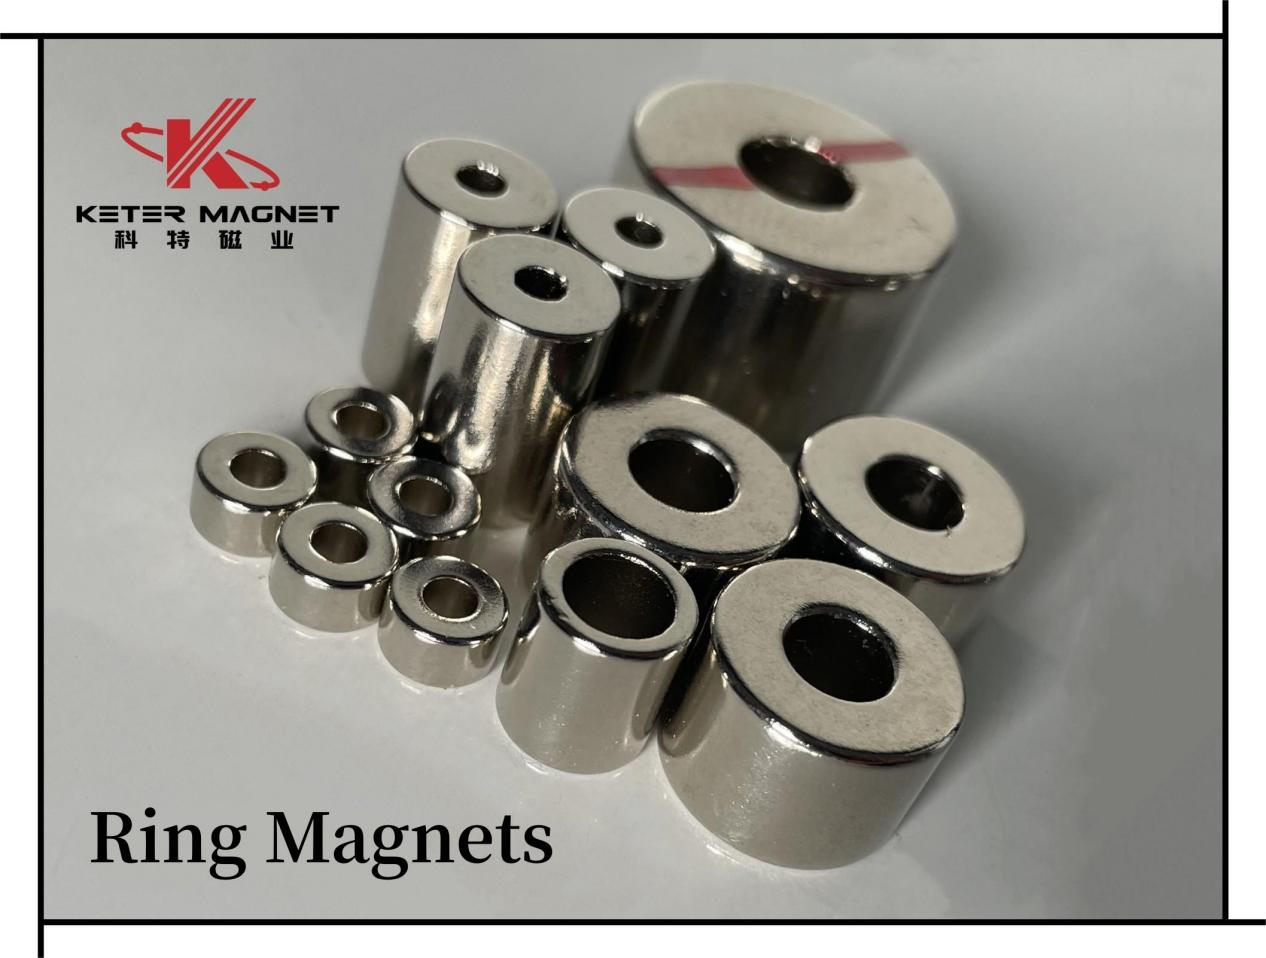 Ringmagnete sind für verschiedene Zwecke geeignet